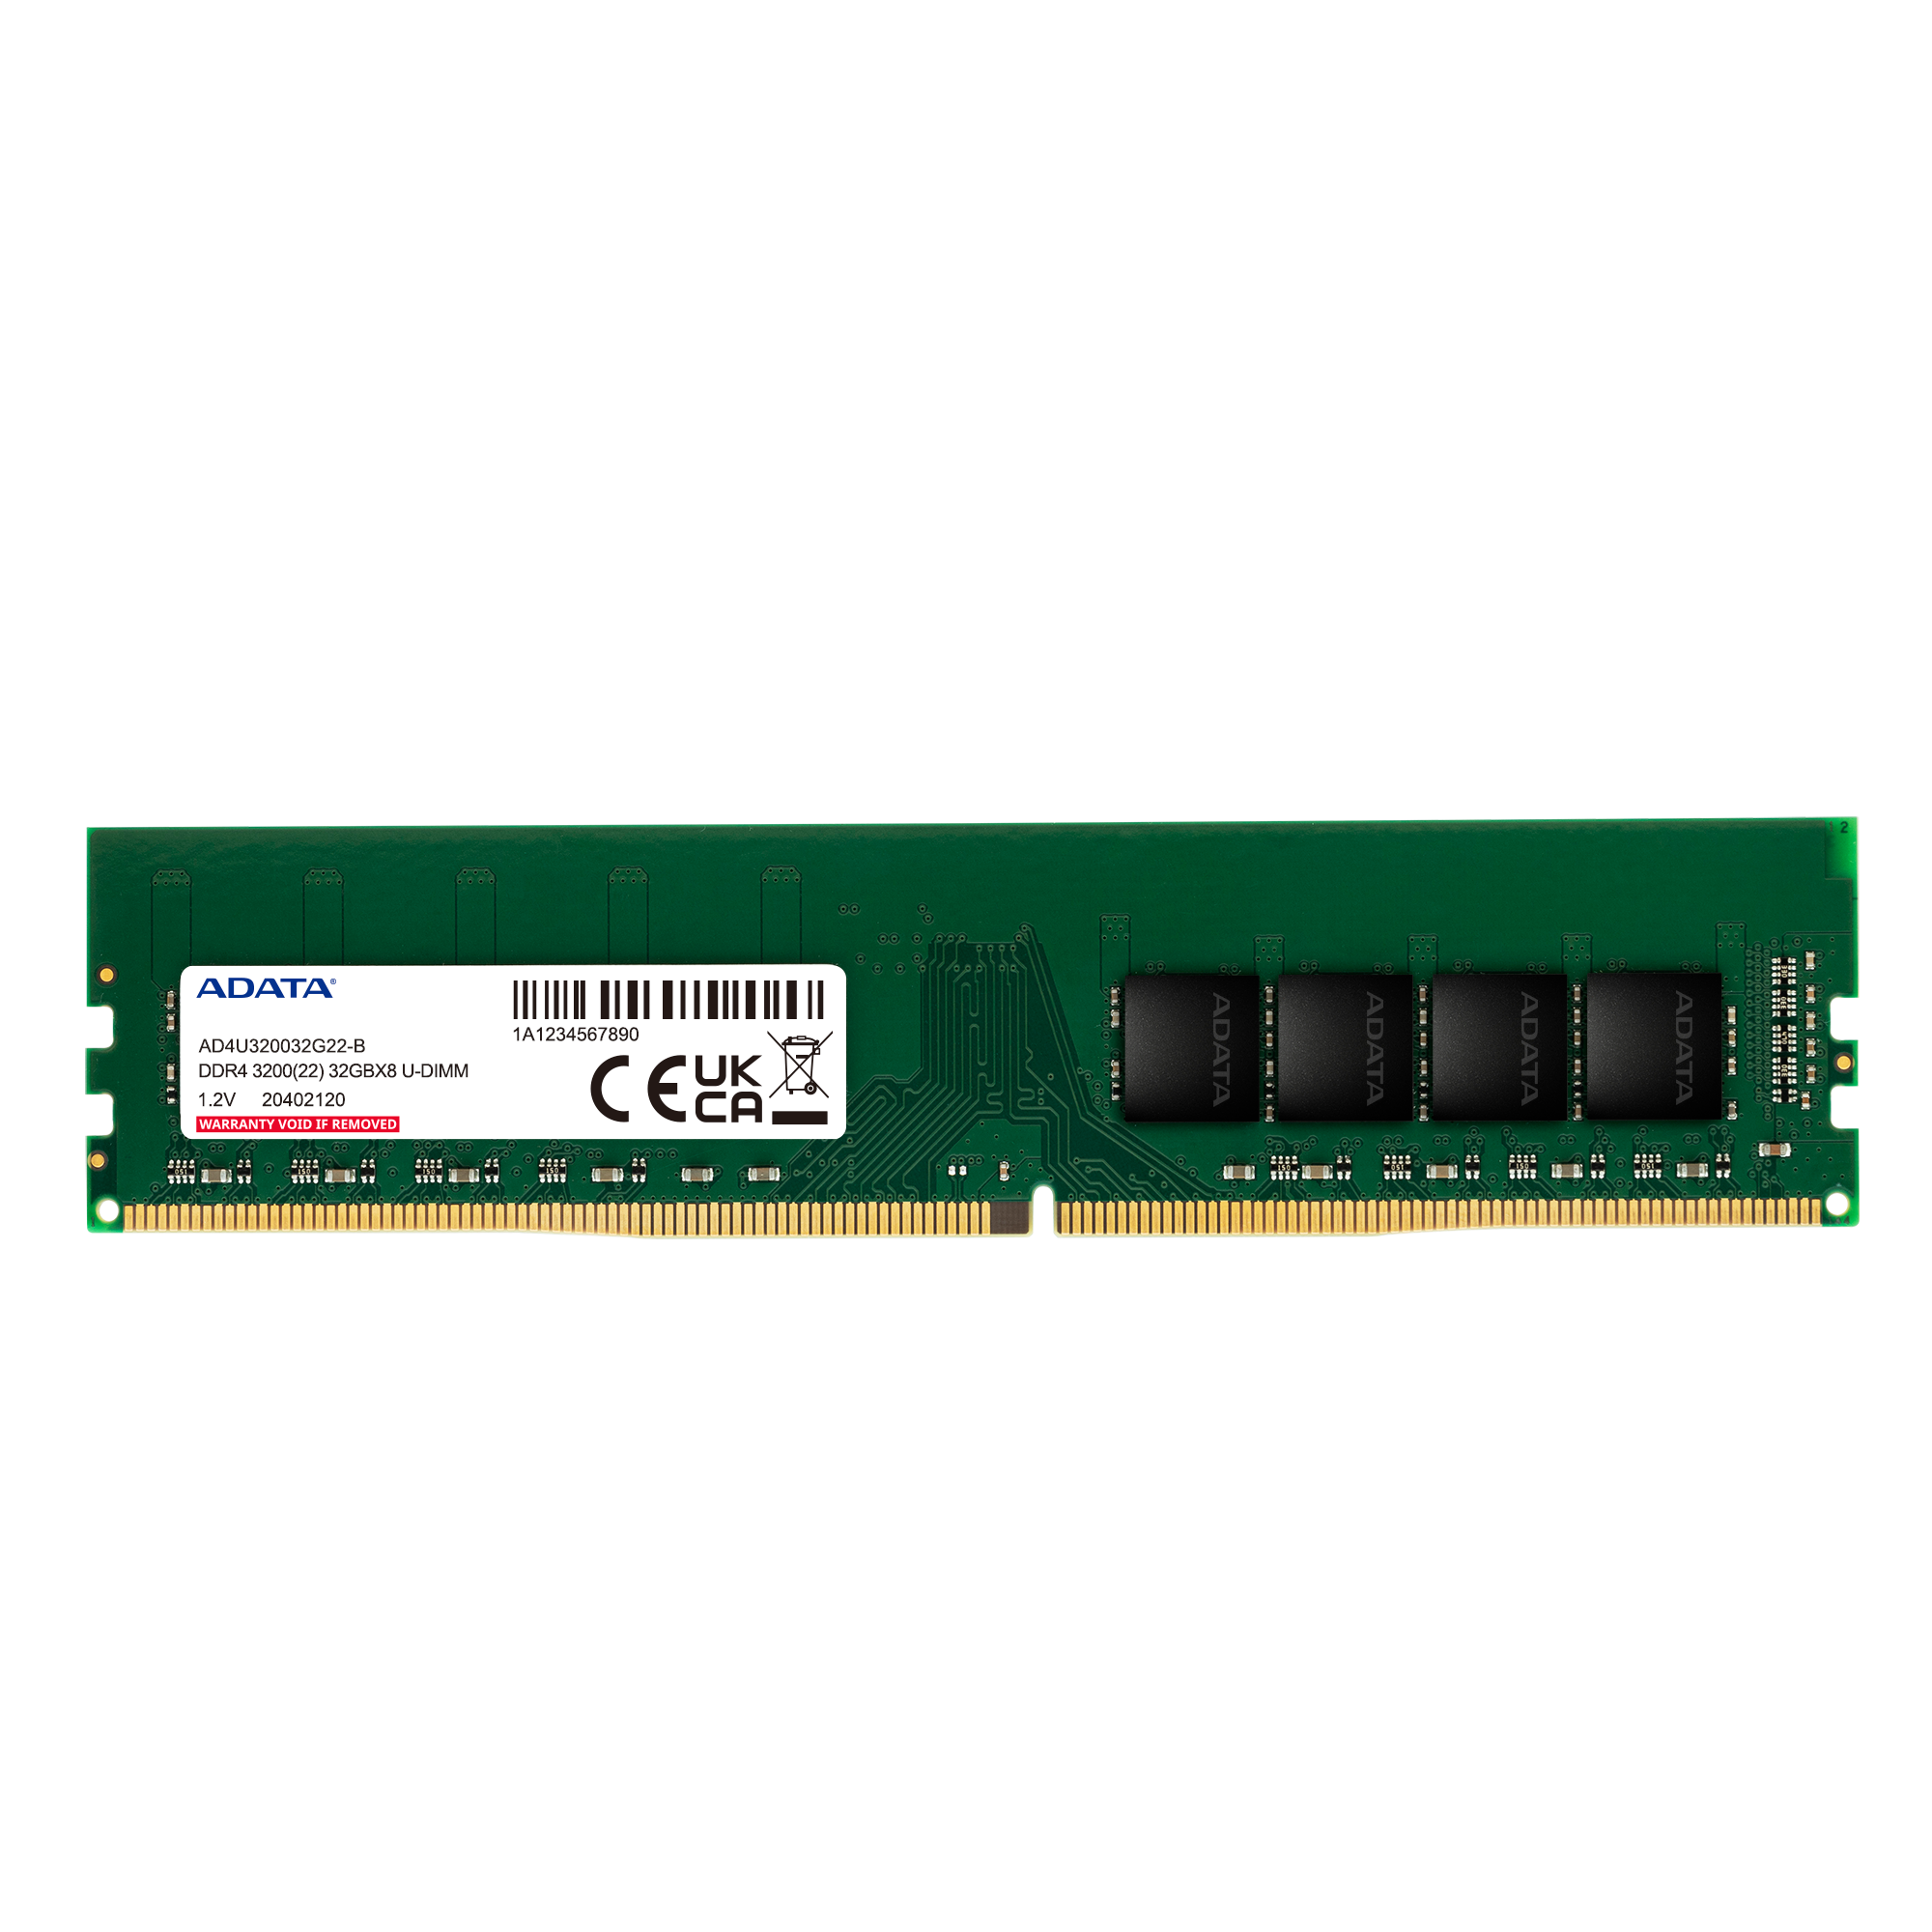 プレミア DDR4 3200 U-DIMM メモリモジュール (Japan)